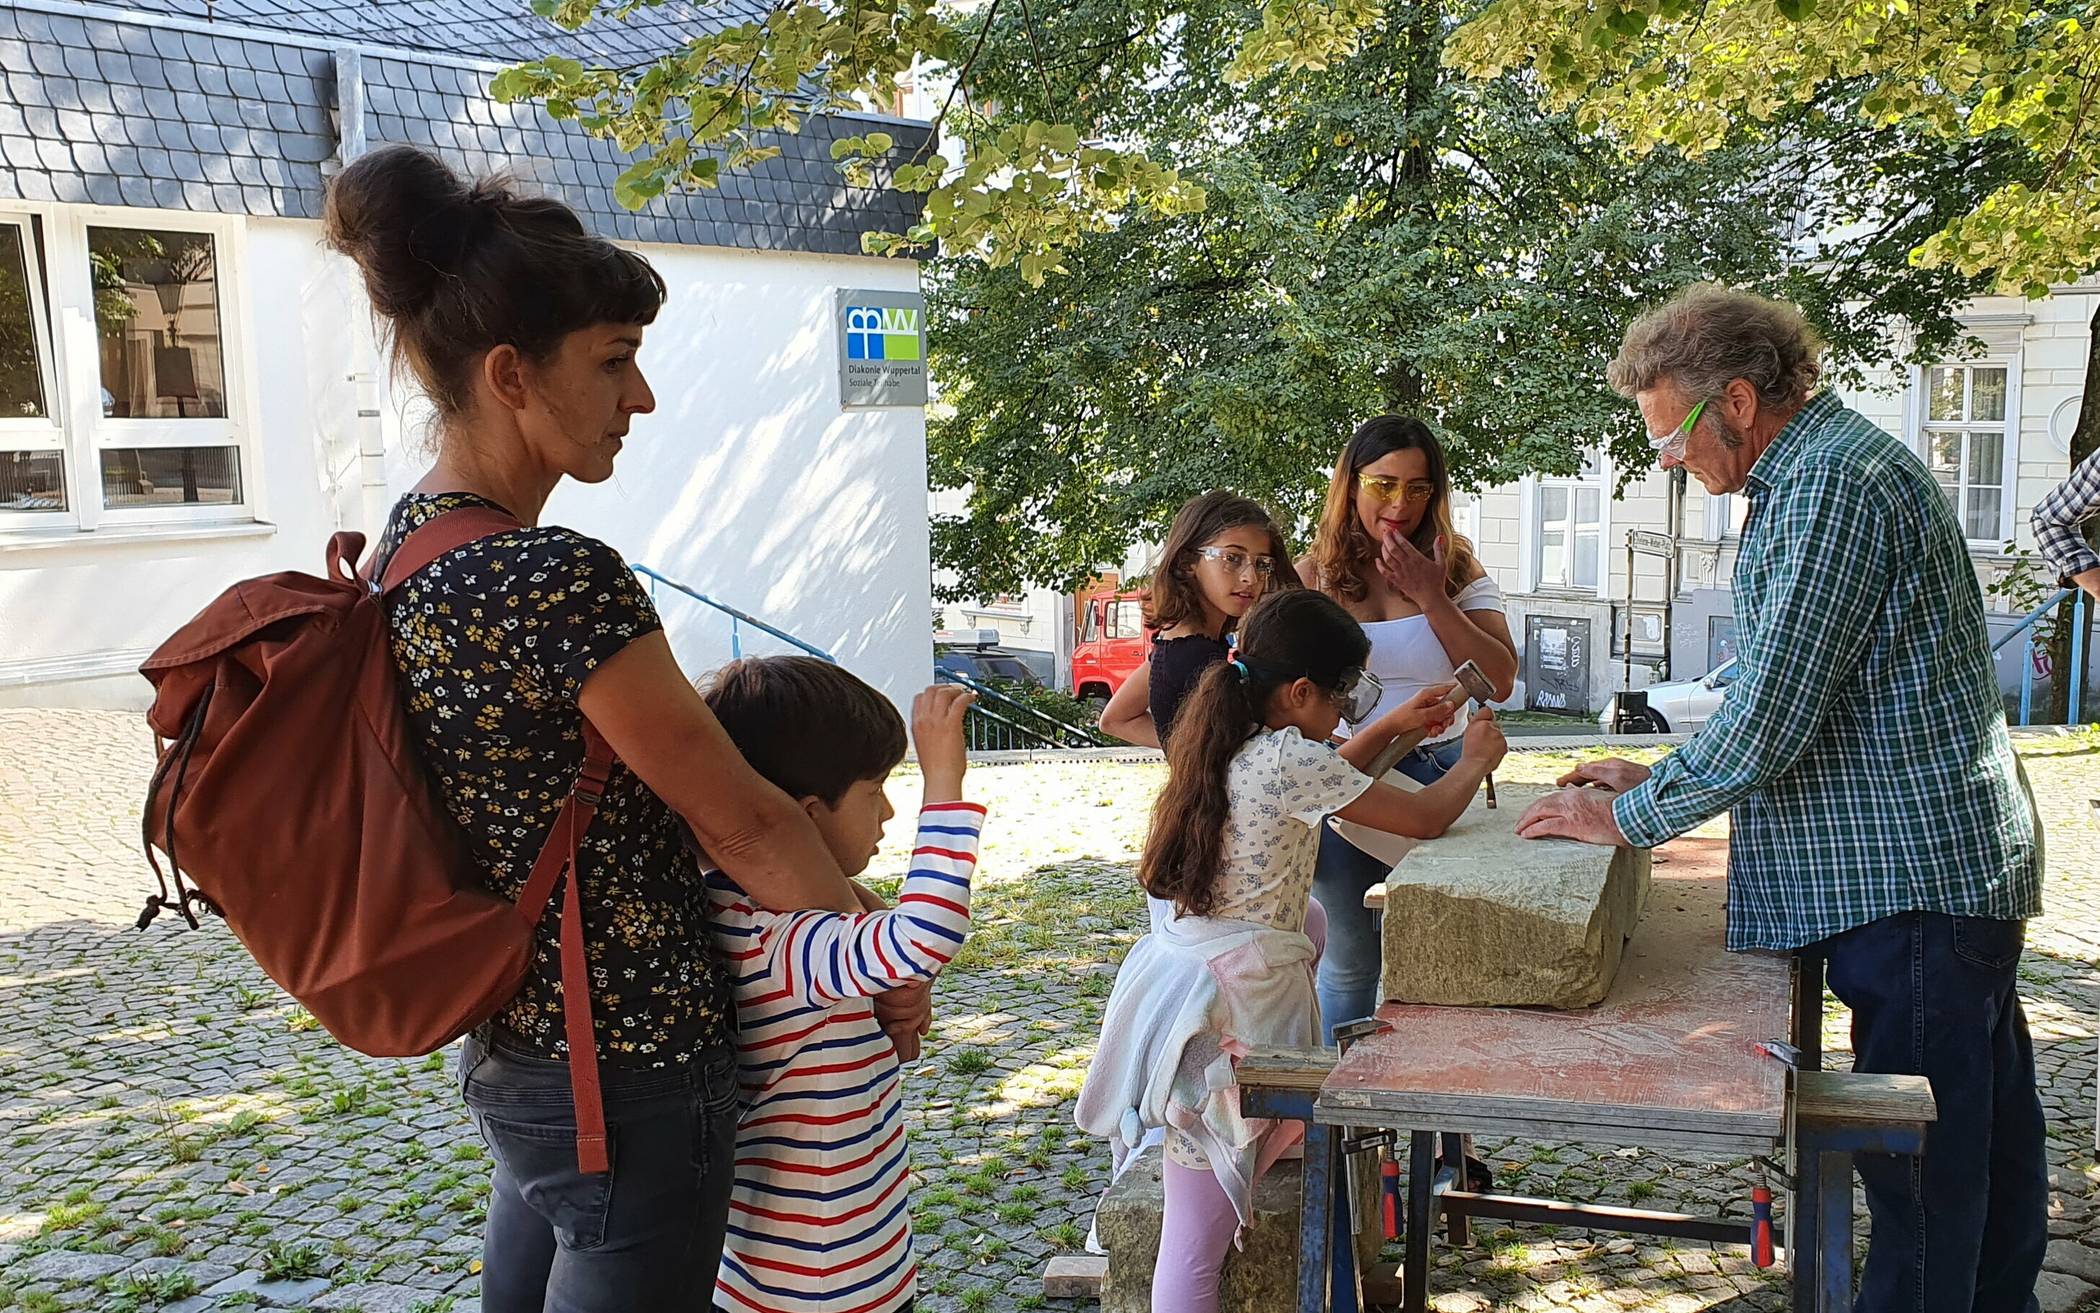  Bildhauer Gregor Rasch beim Kinder-Workshop auf dem Helene-Weber-Platz.  